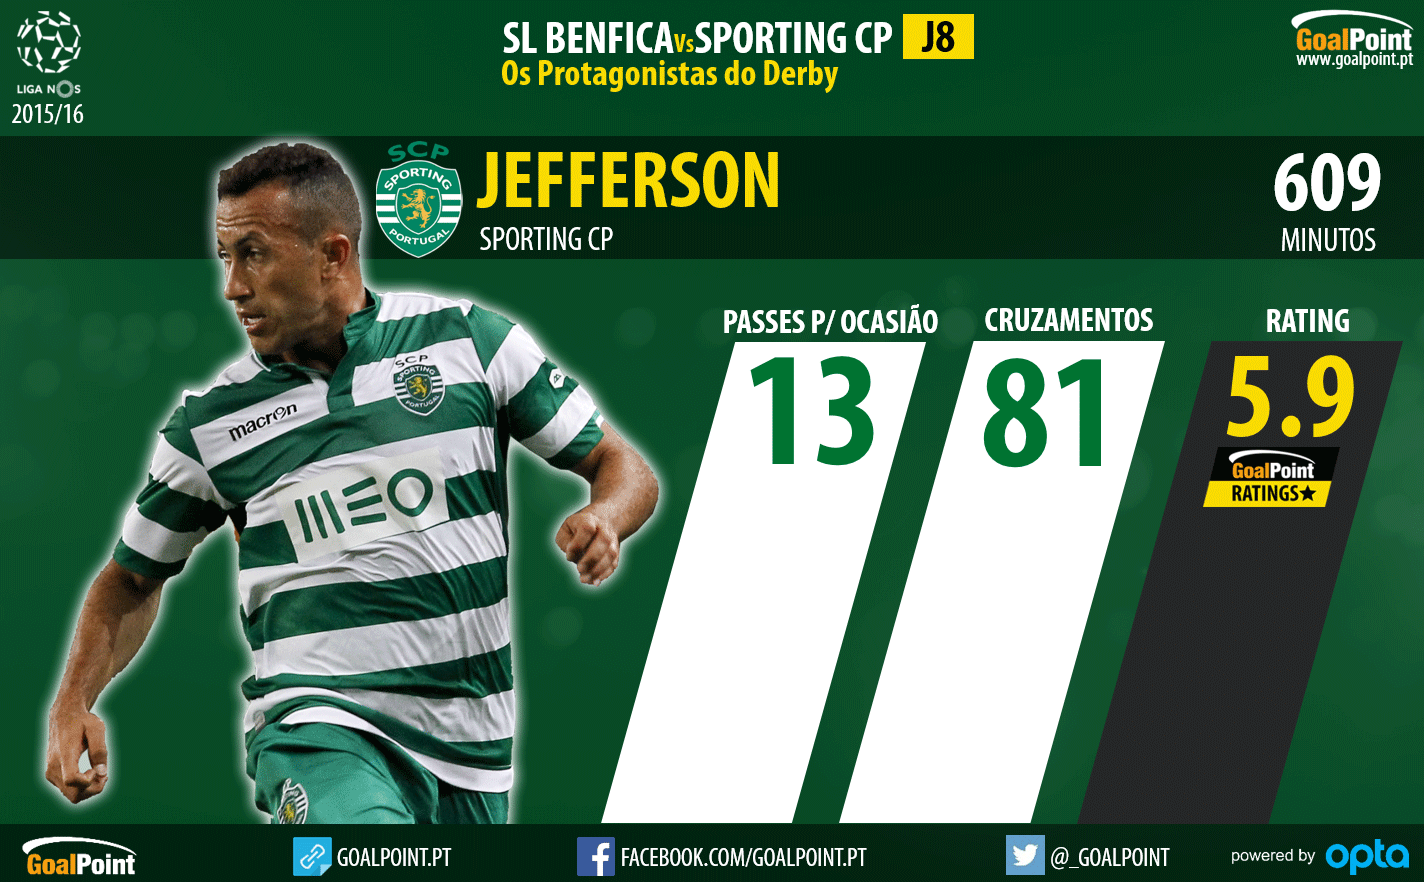 Benfica - Sporting Liga NOS 2015/16 - As figuras que podem fazer a diferença - Jefferson